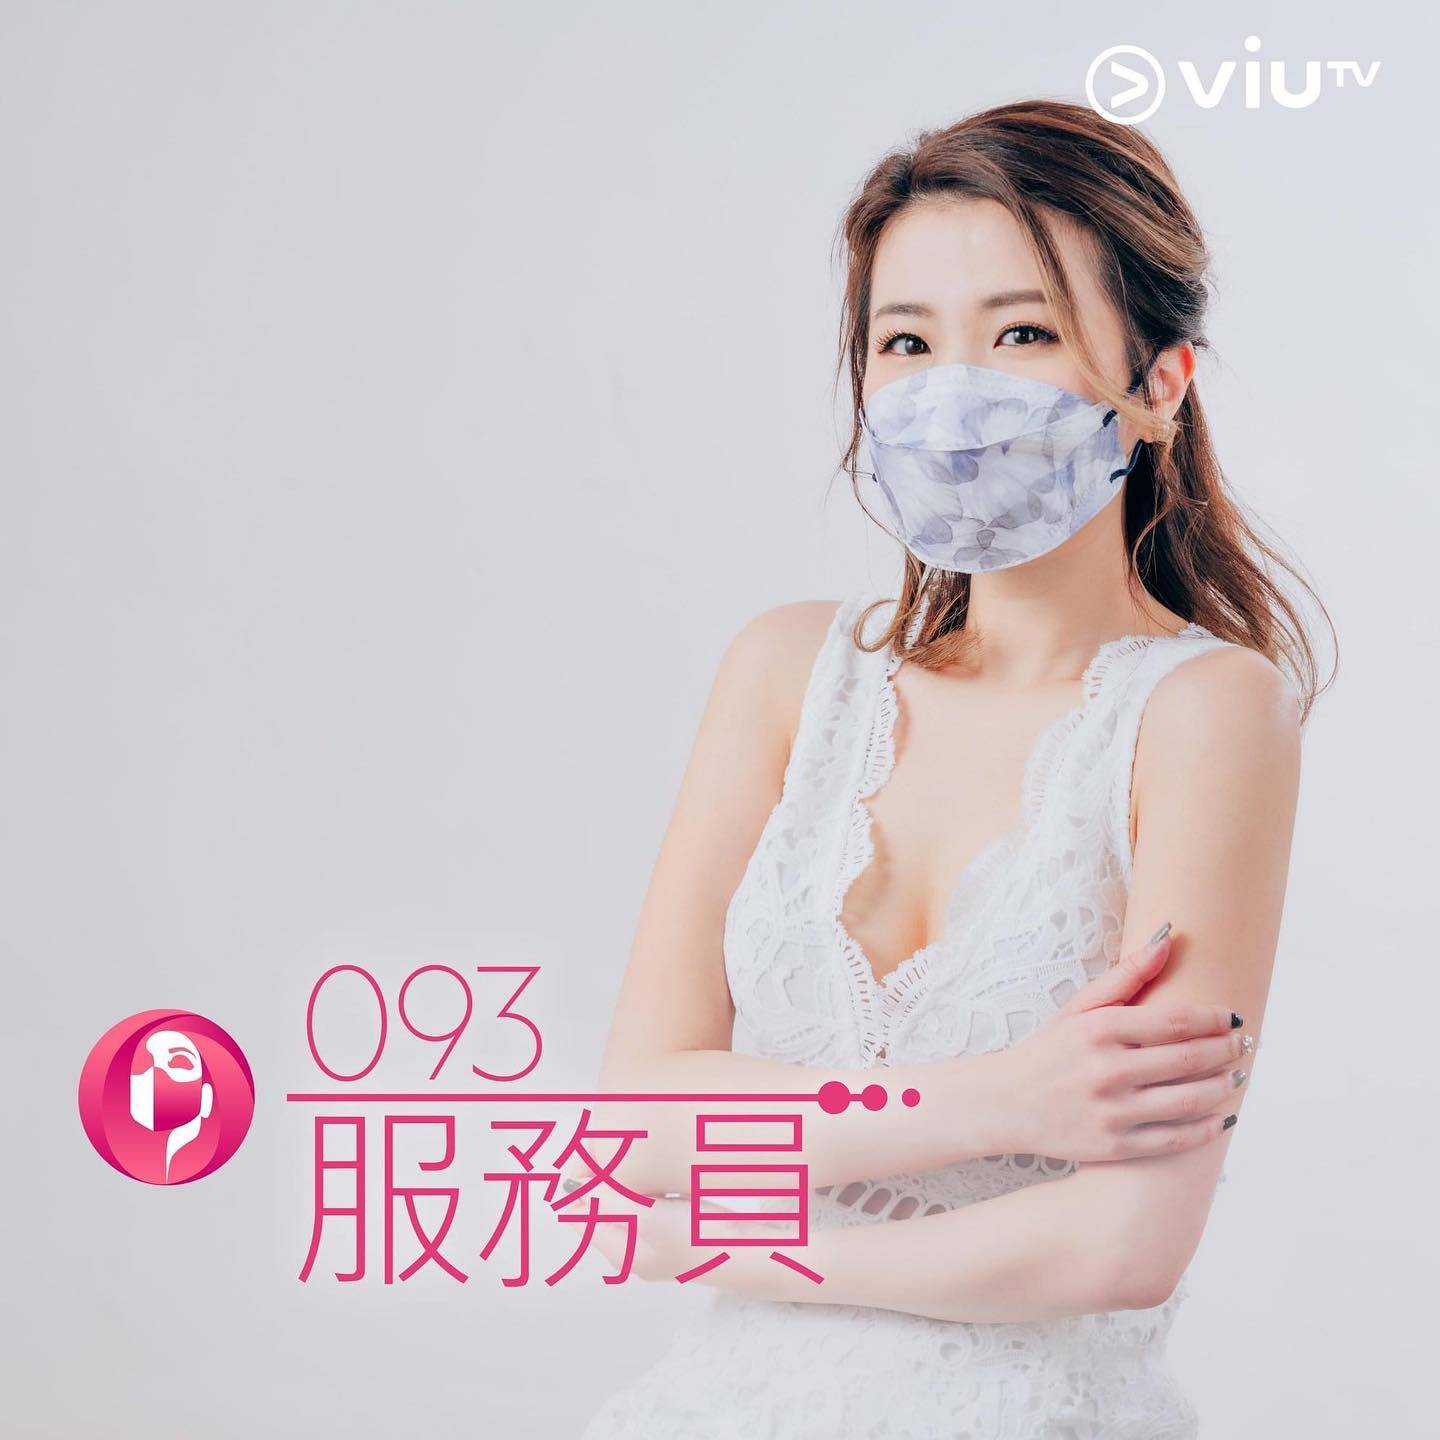 刘青云 口罩小姐 温颖琦于2年前参加ViuTV真人骚《最后一届口罩小姐选举》。